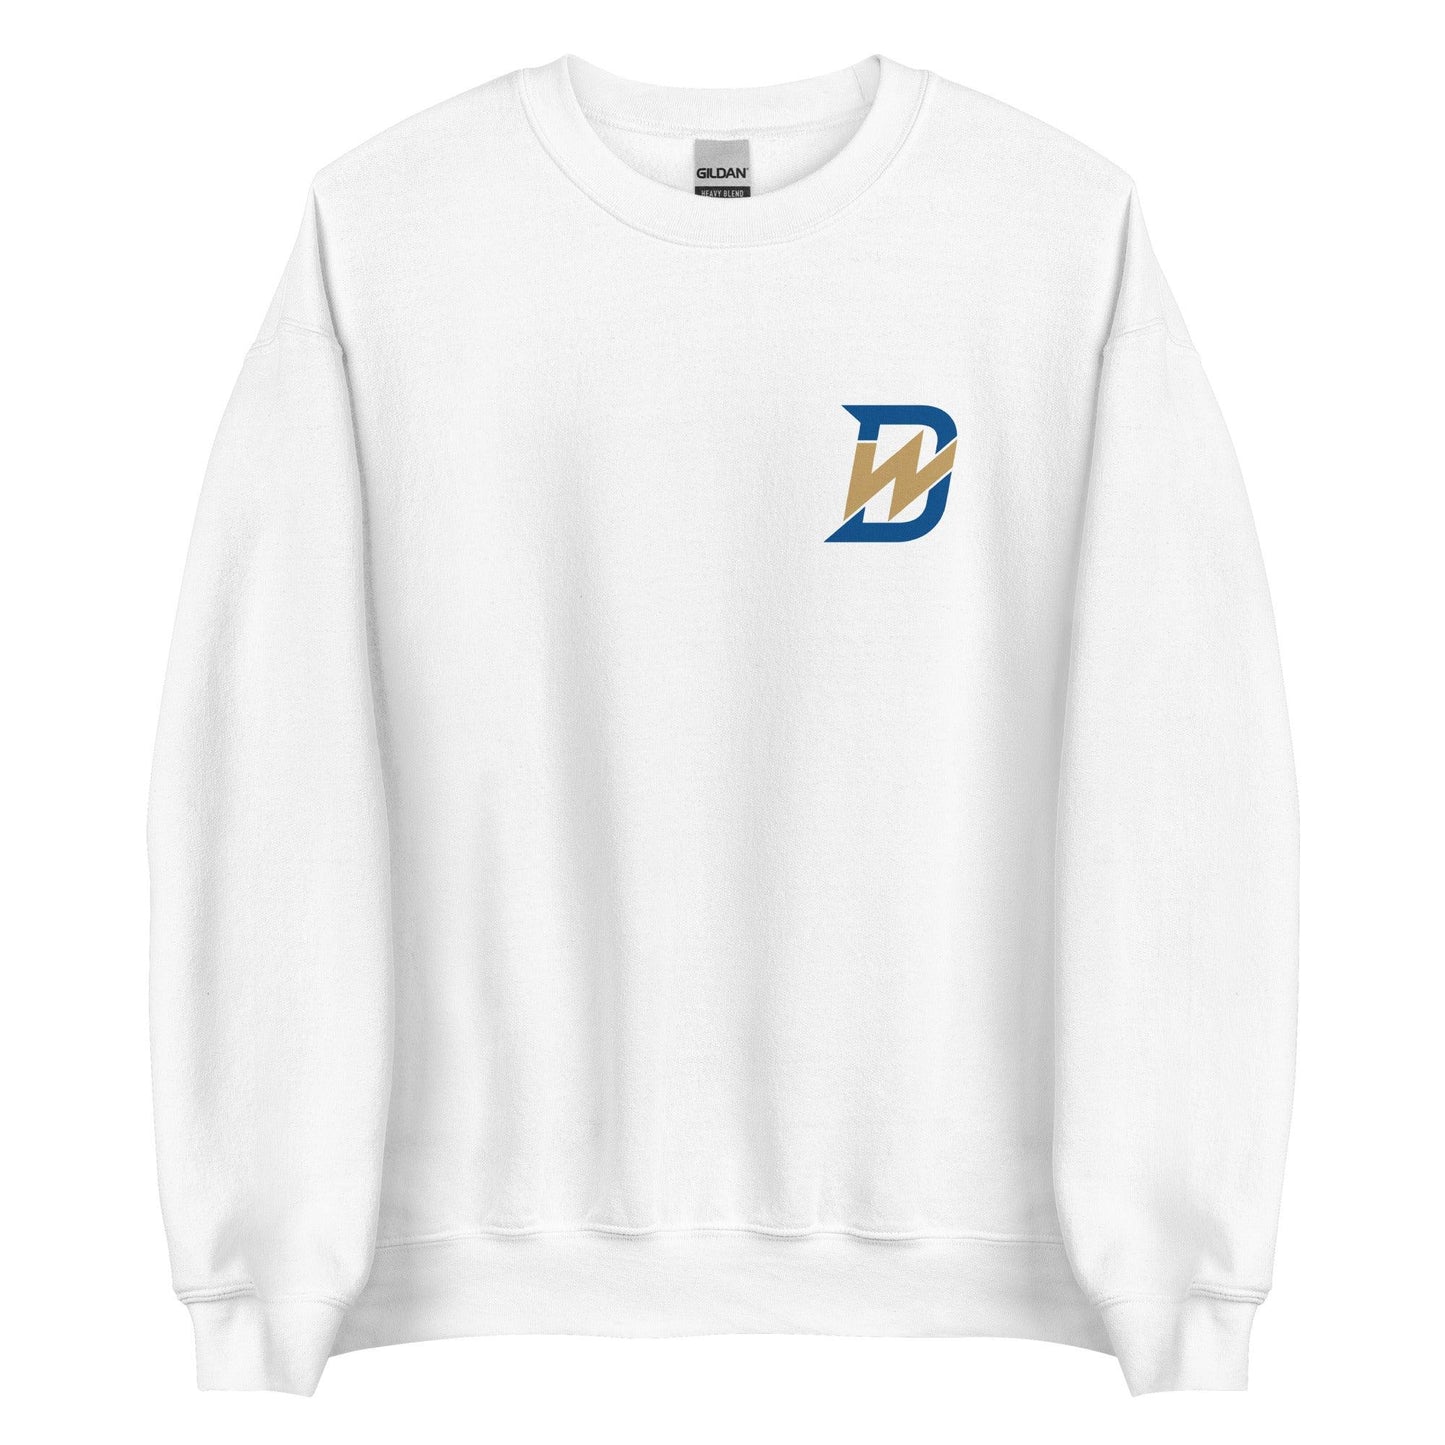 Drew Waters “DW” Sweatshirt - Fan Arch